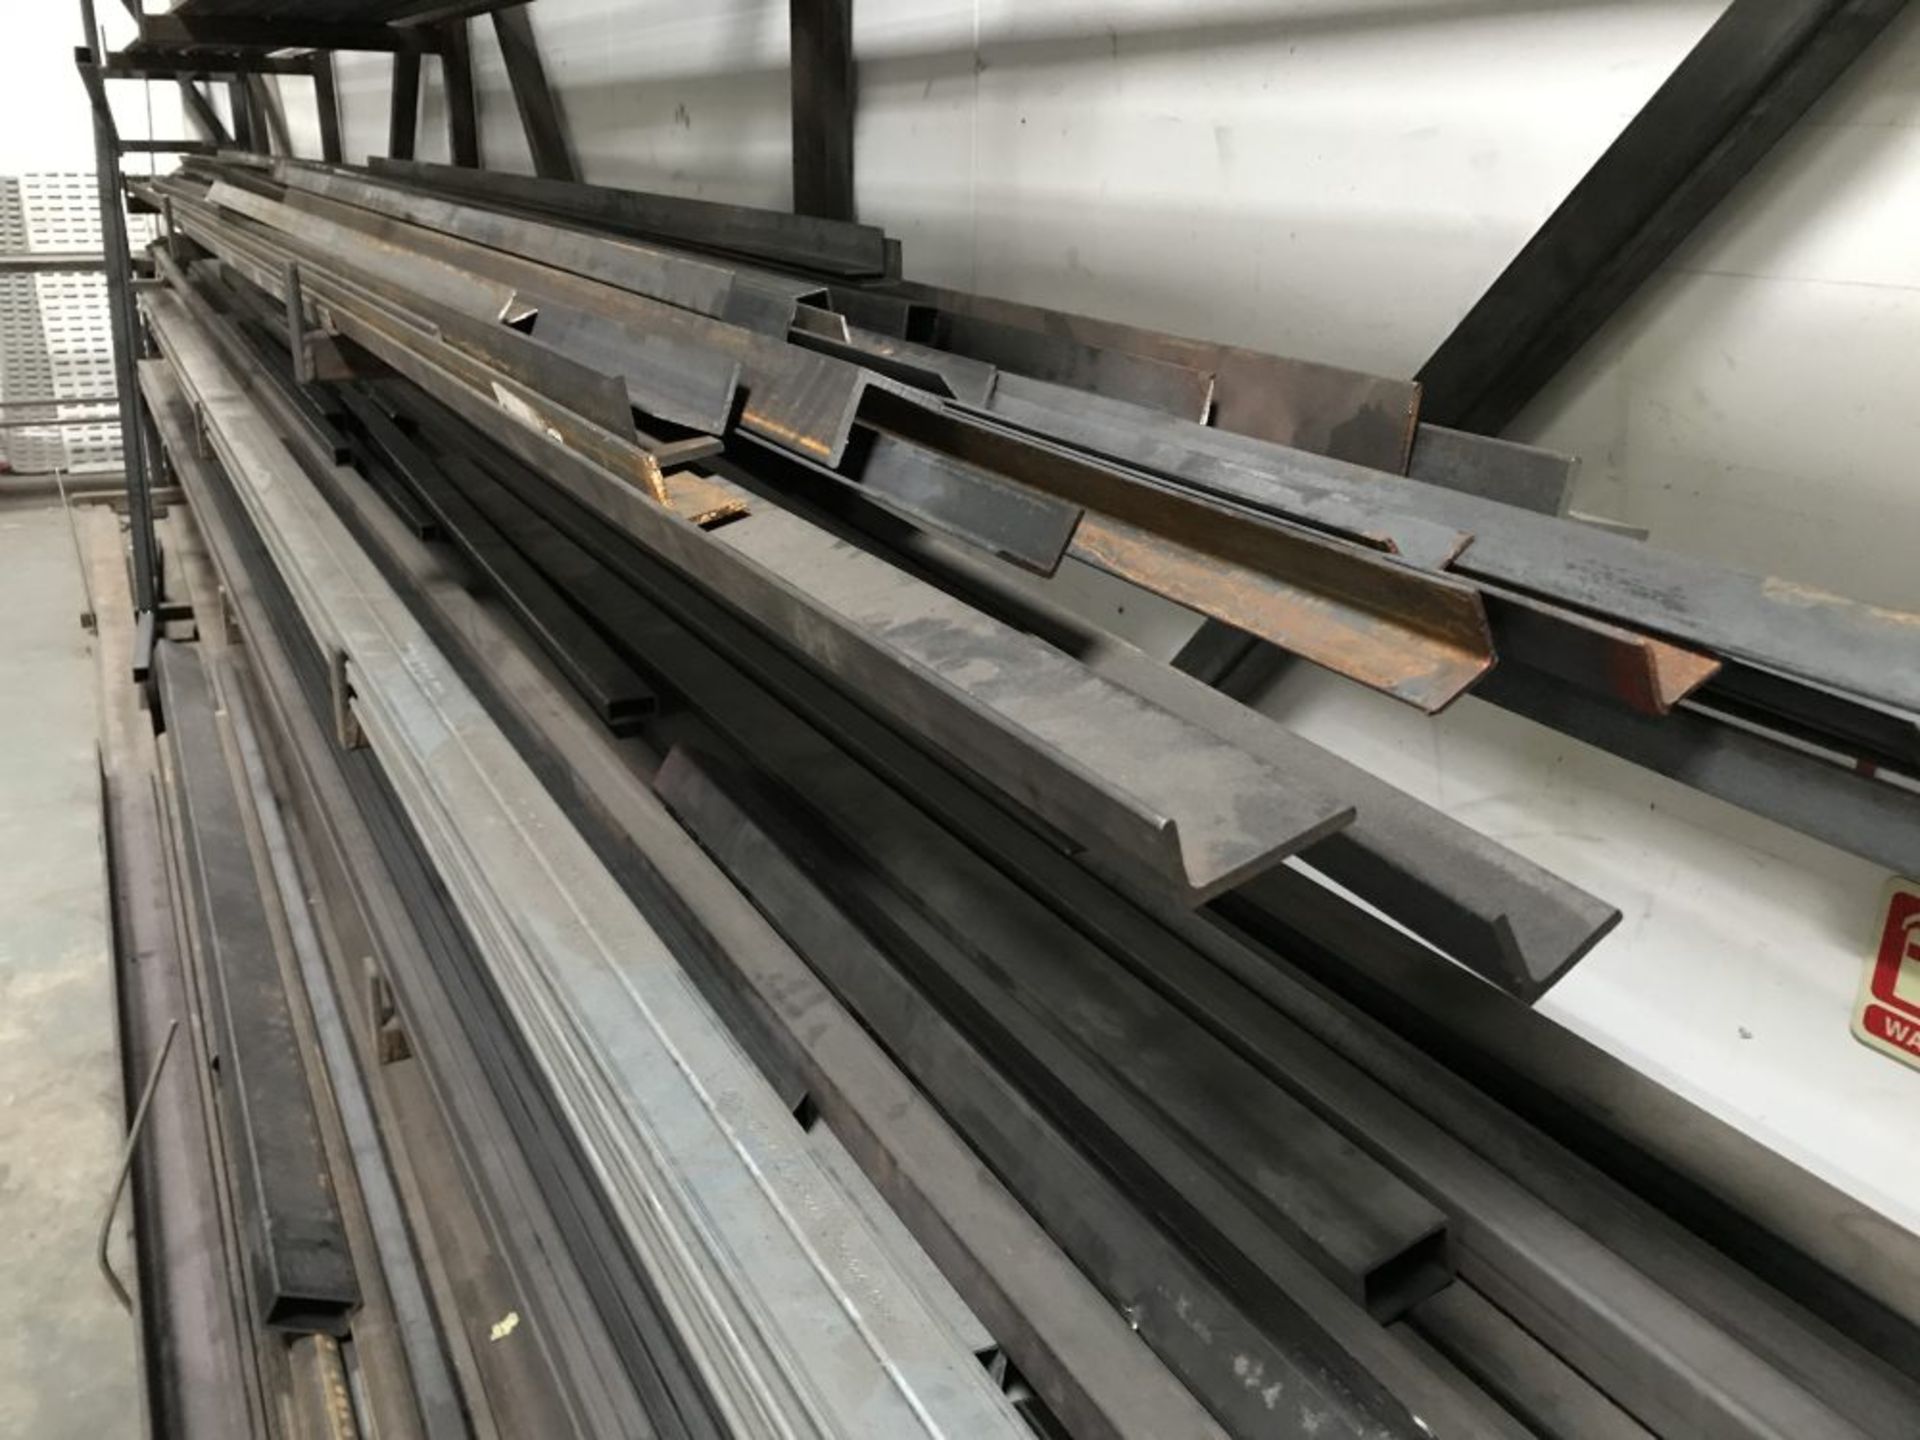 A quantity of steel and aluminium